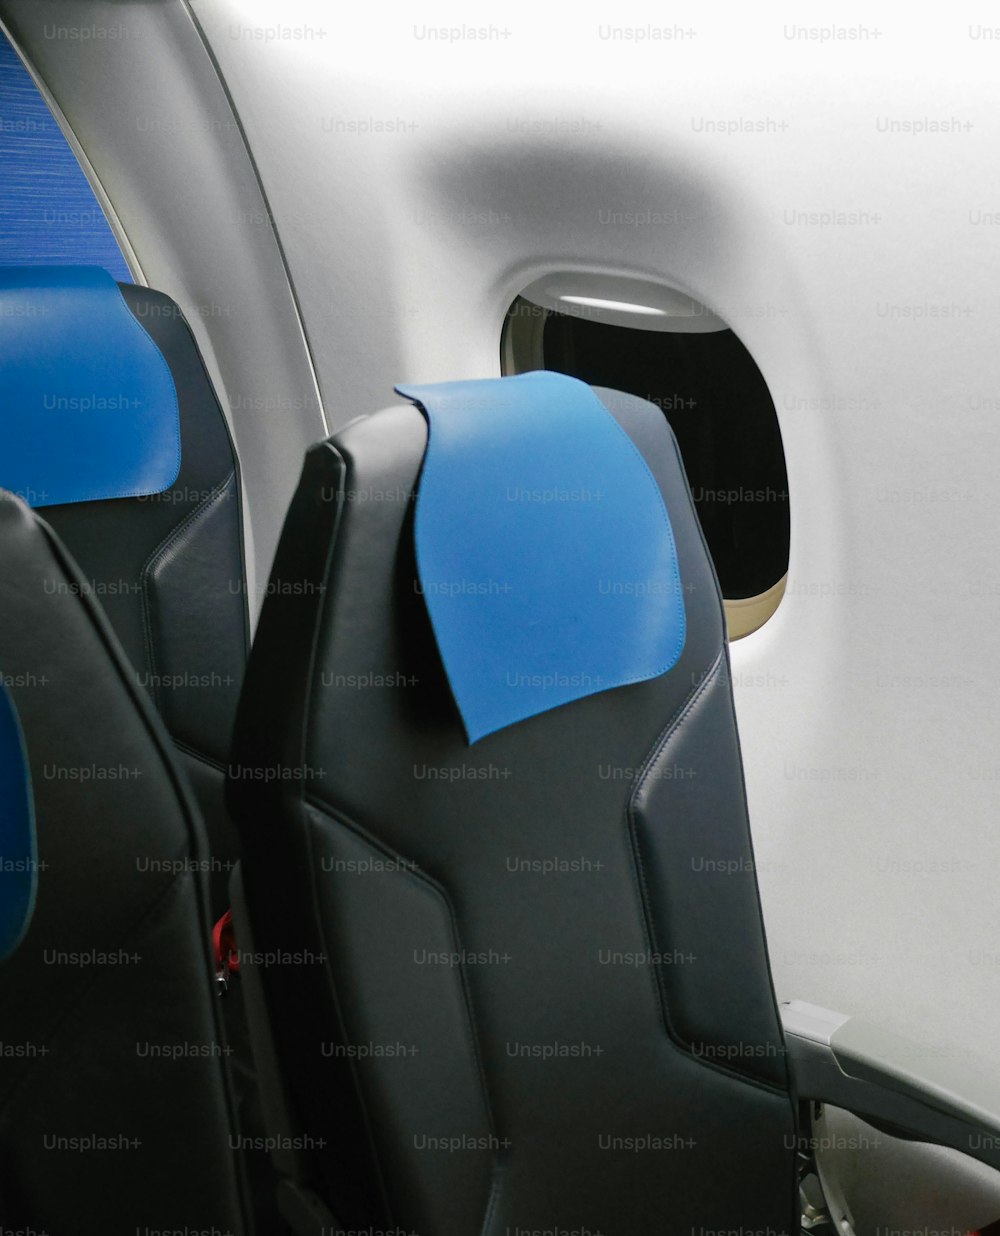 Les sièges de l’avion sont bleus et noirs